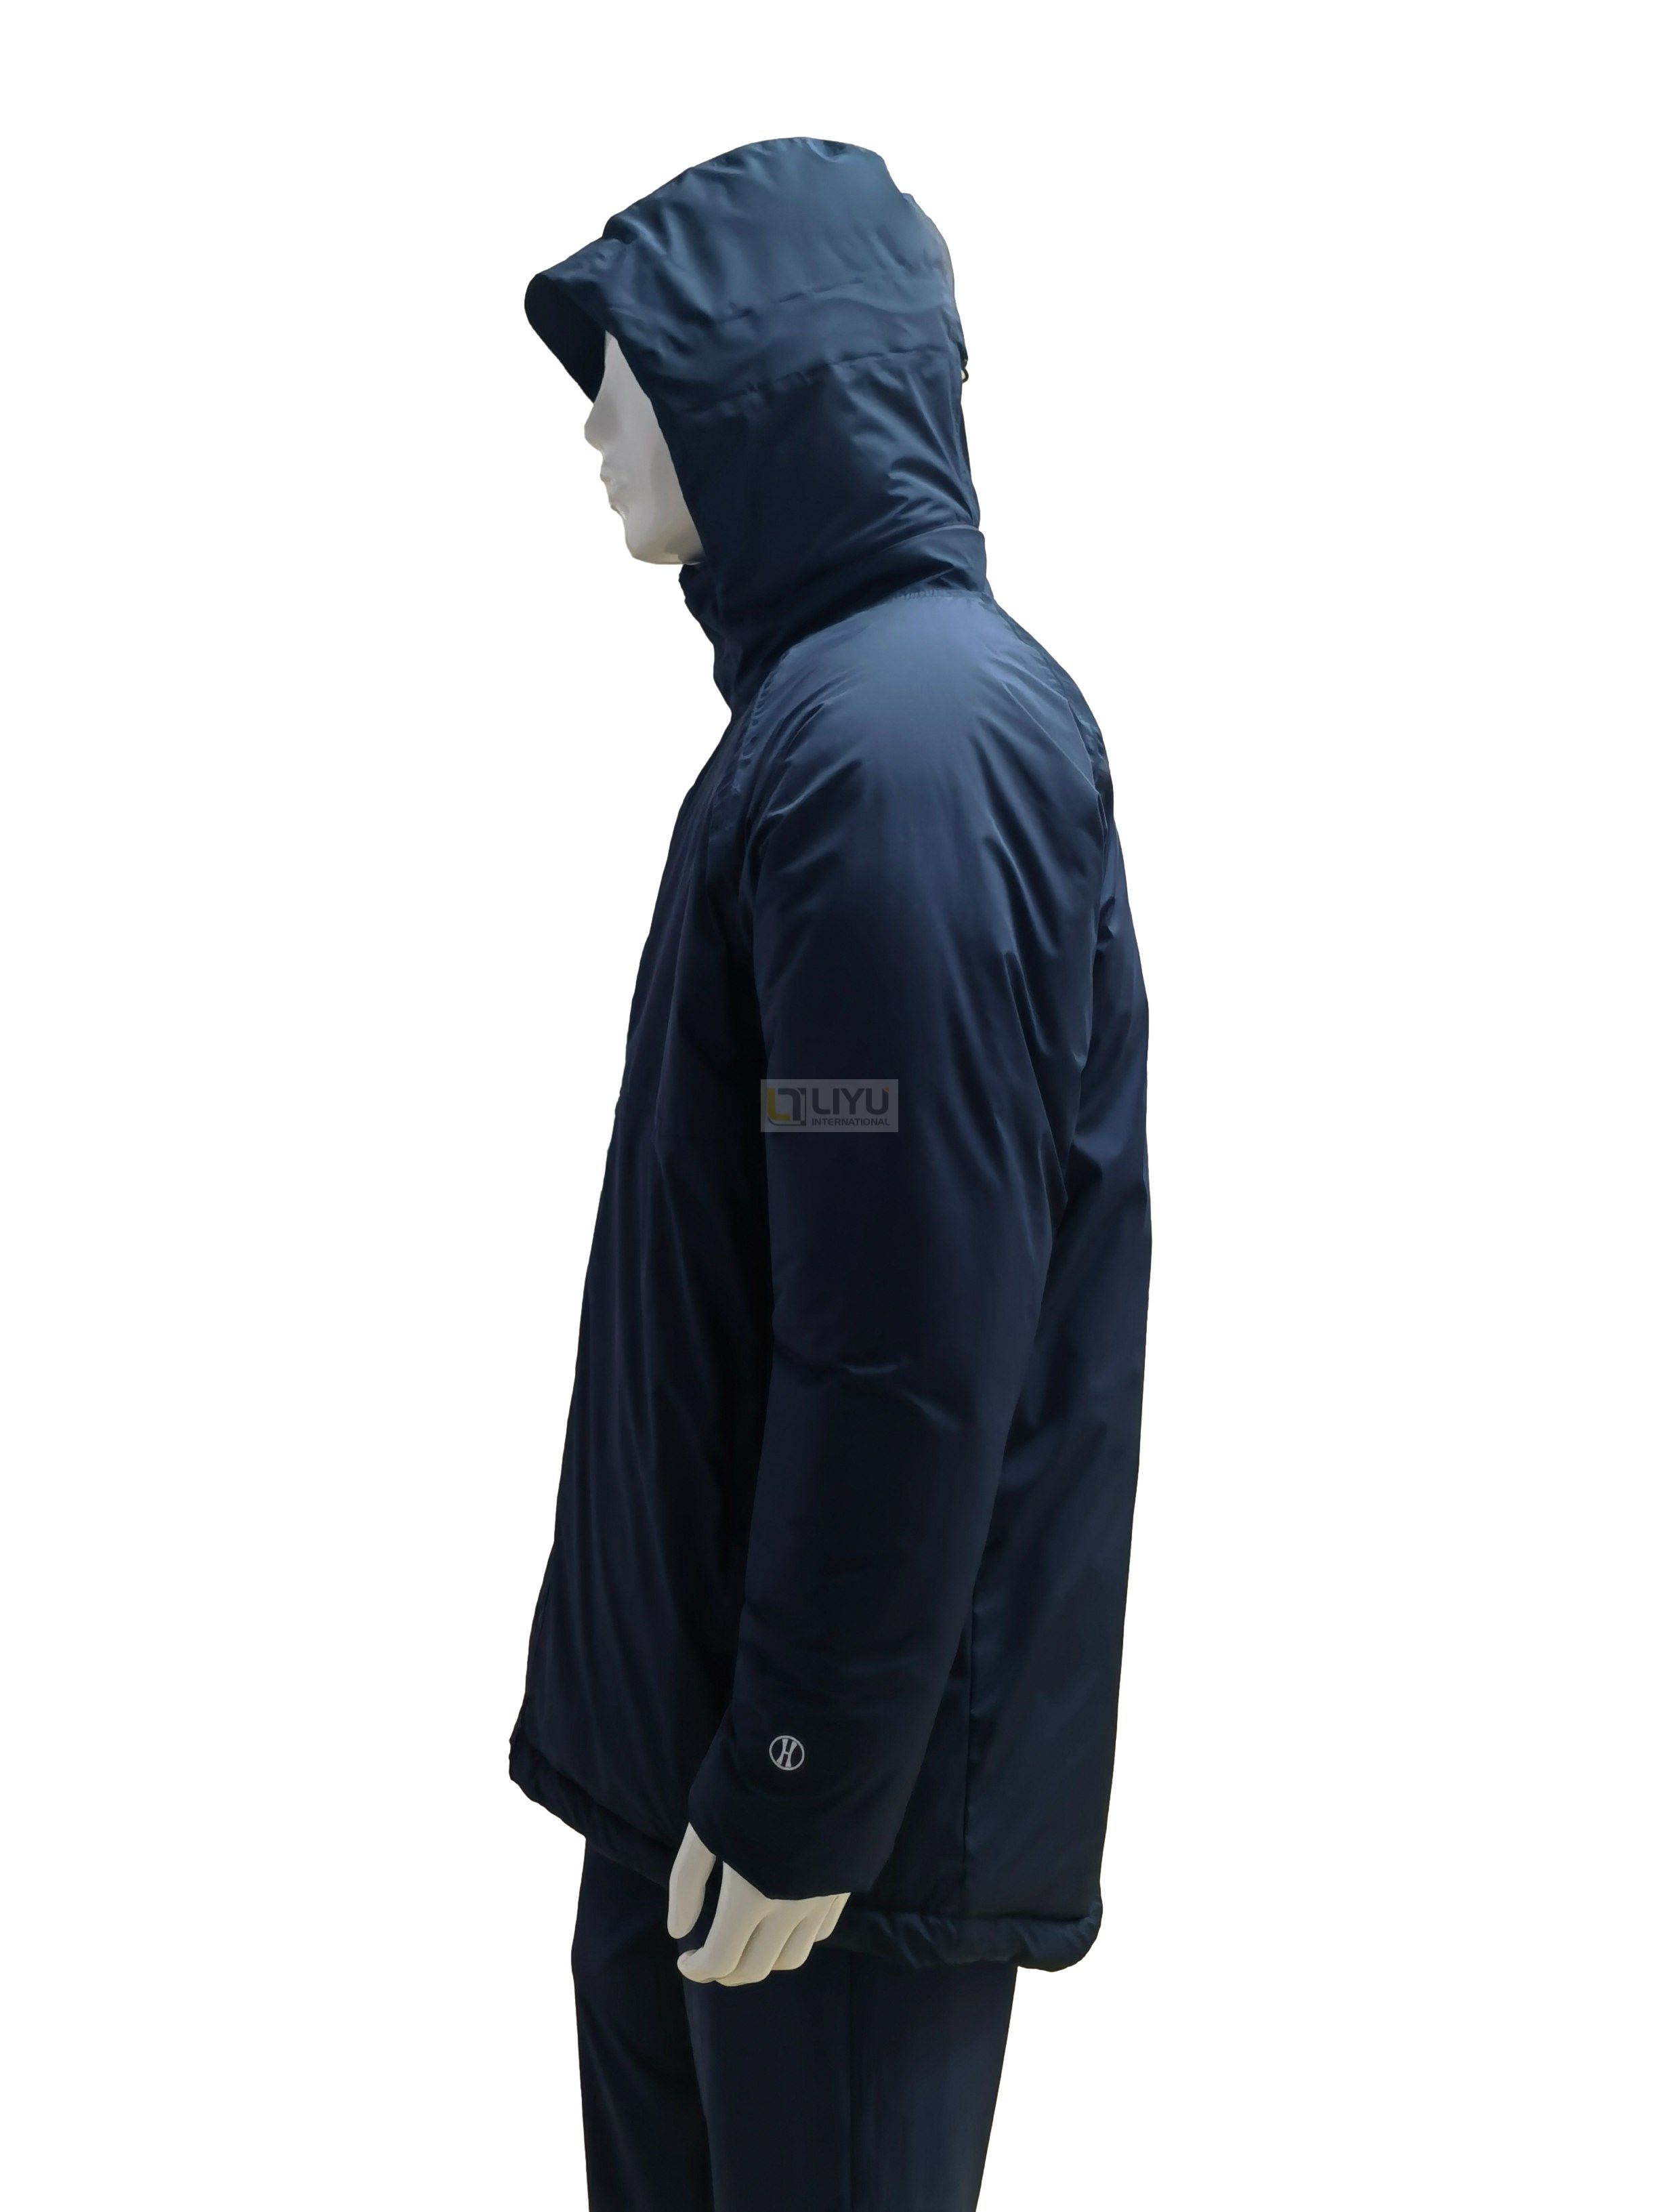 Adult Polyester Raincoat with Hood Men's Waterproof Jacket Outdoor Activities